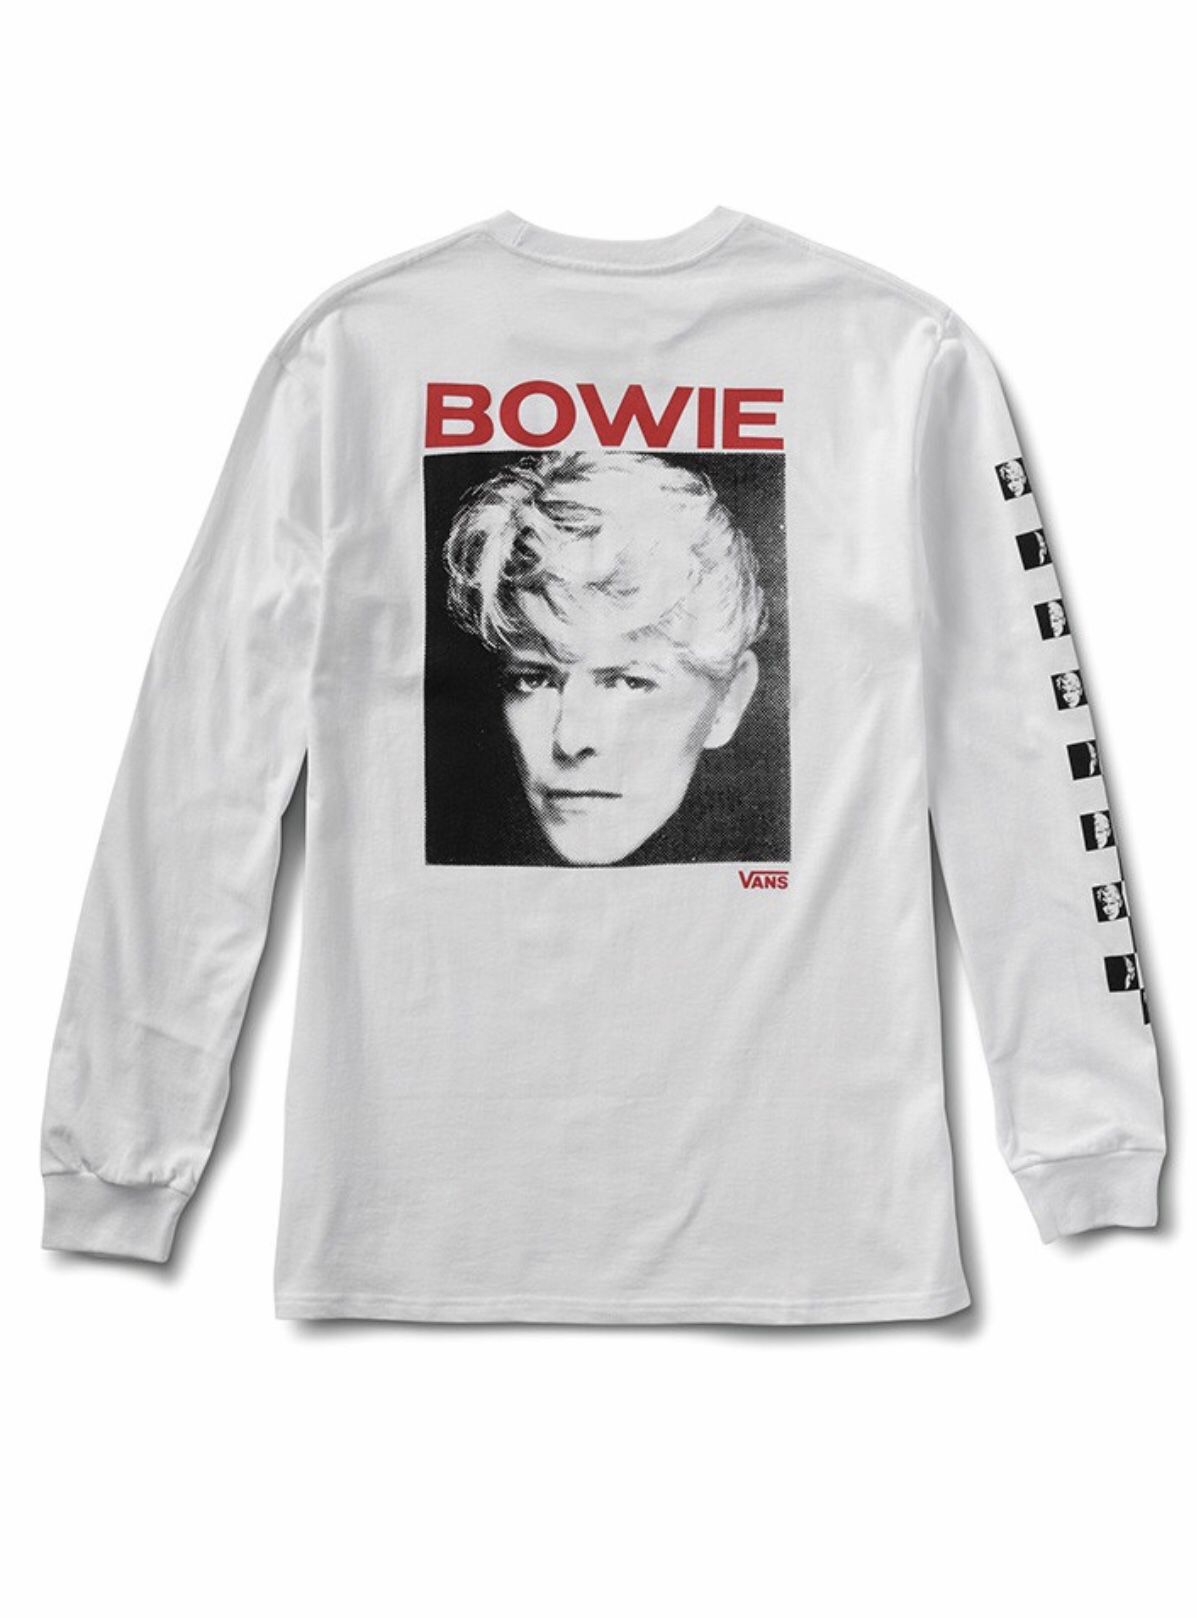 Vans X David Bowie Long Sleeve T-Shirt Size-L